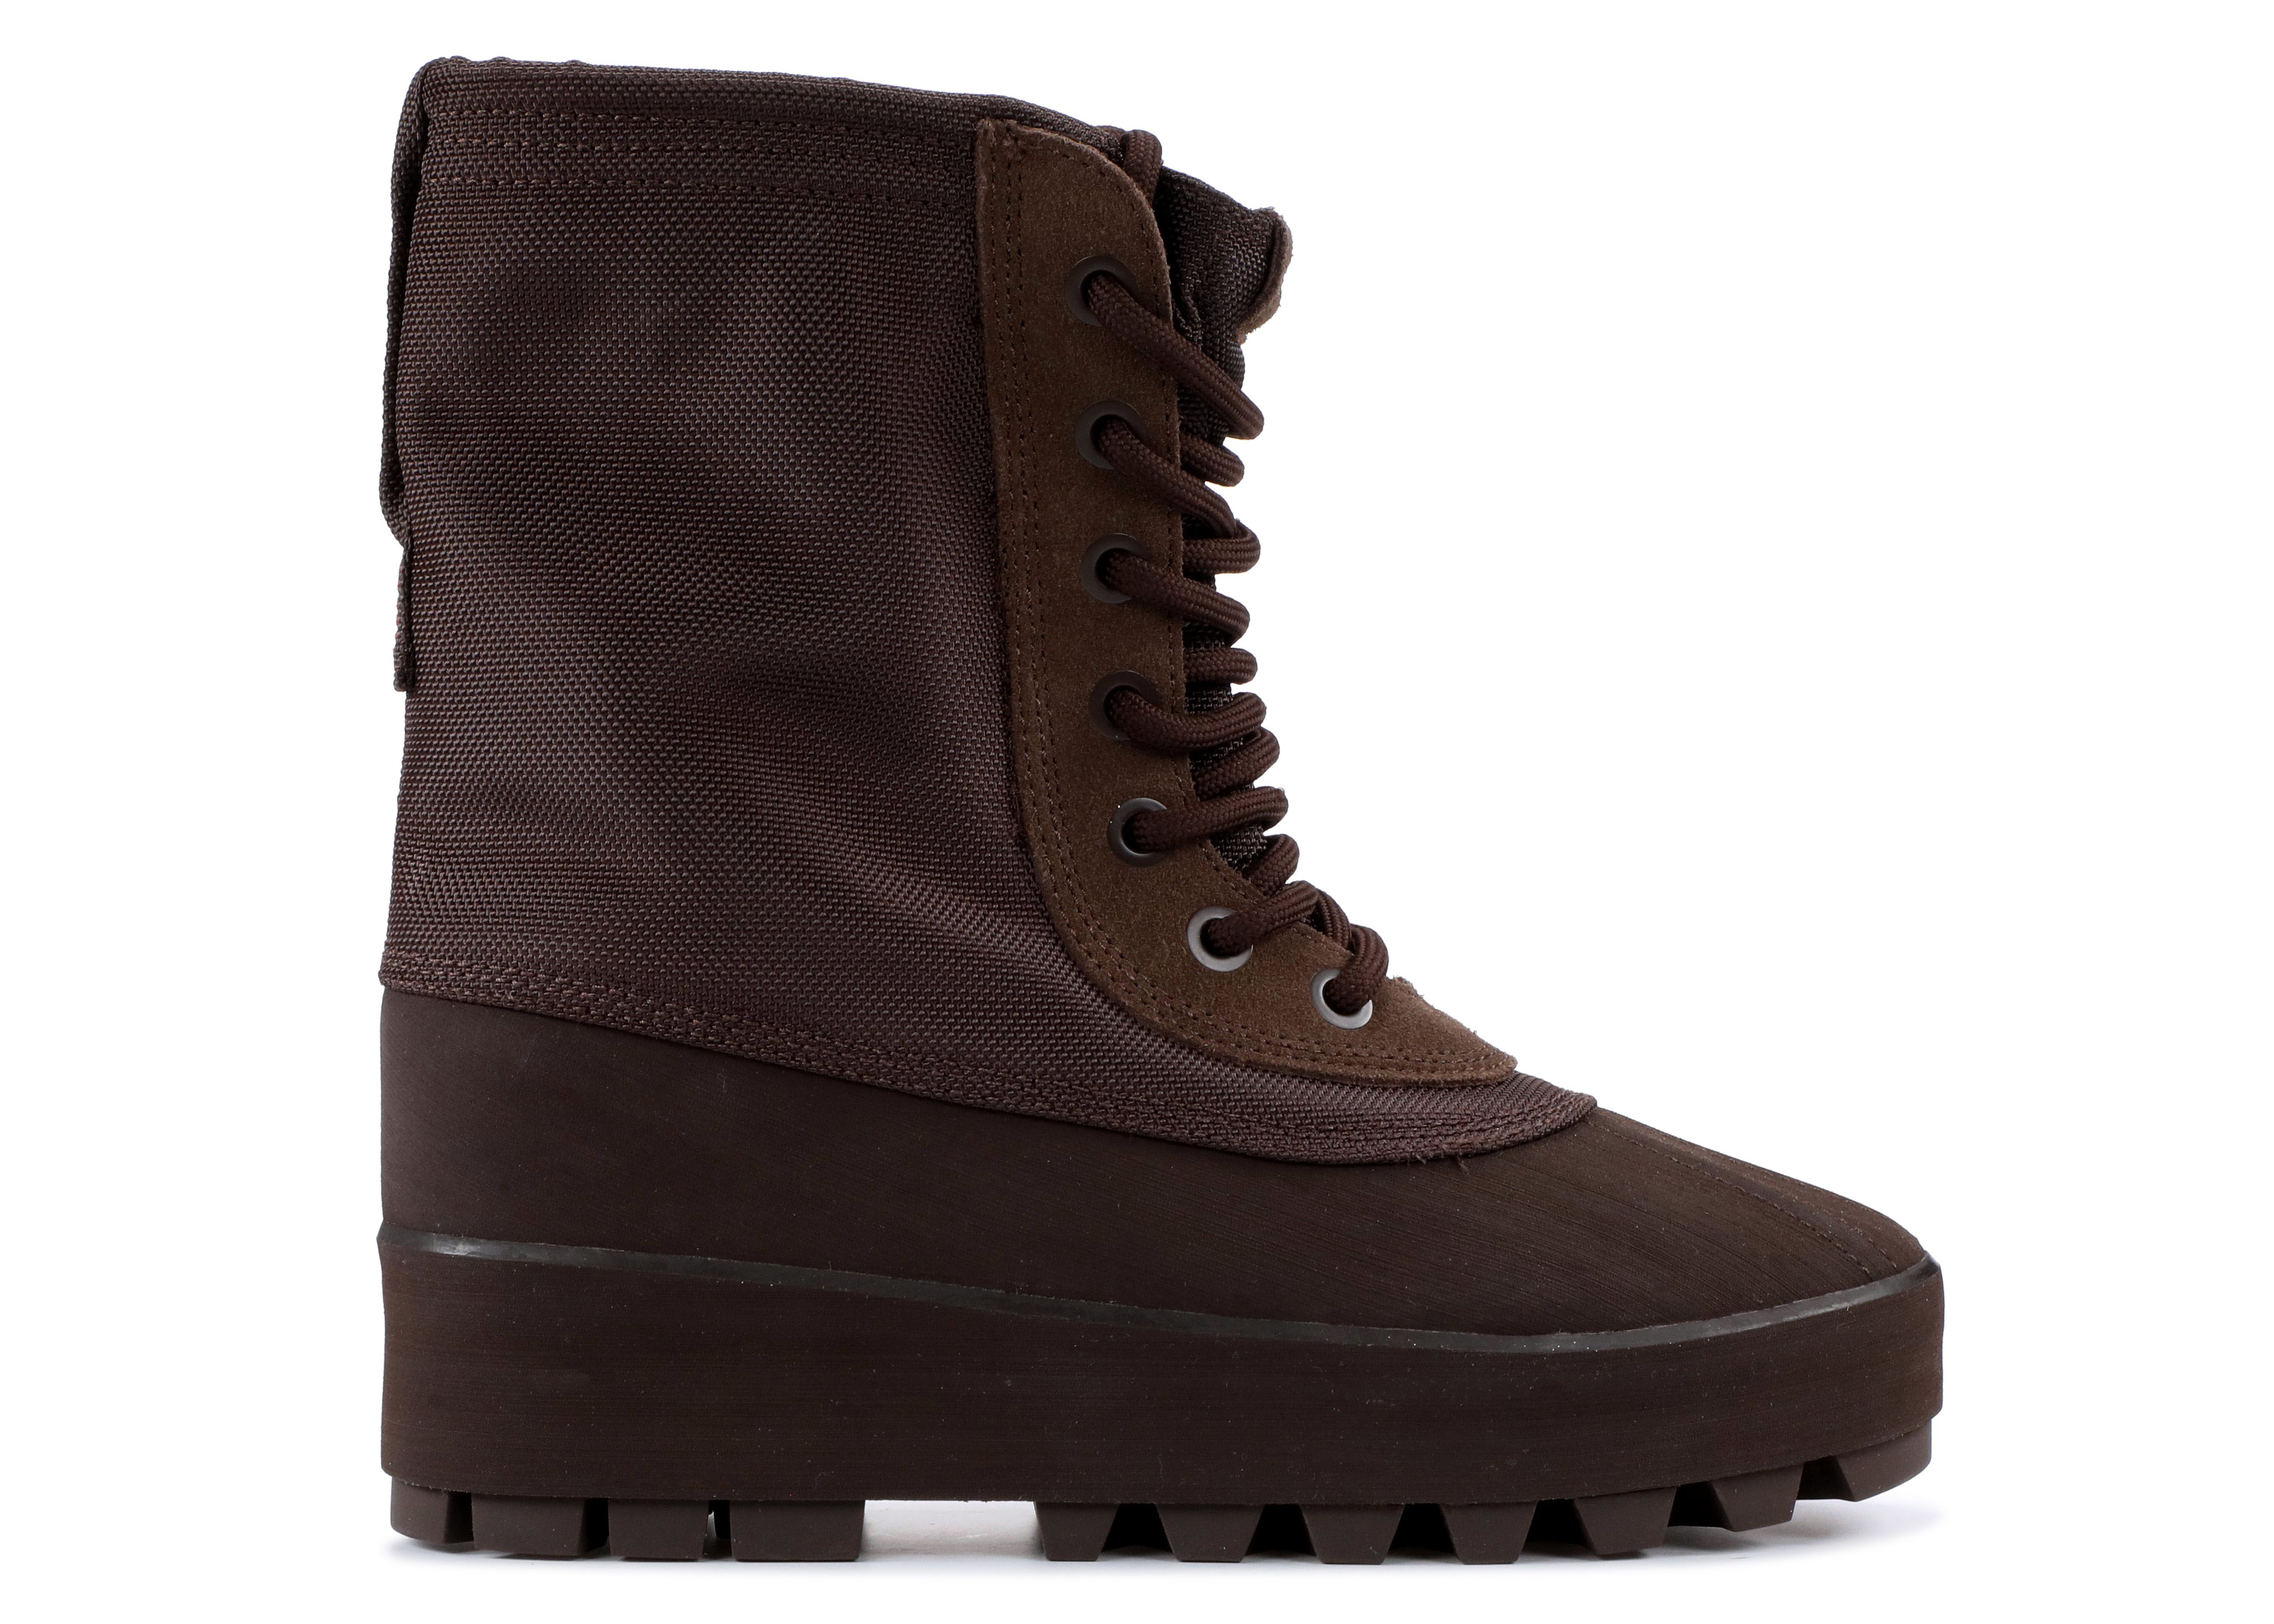 Yeezy 950 Boot 'Chocolate' - Adidas 